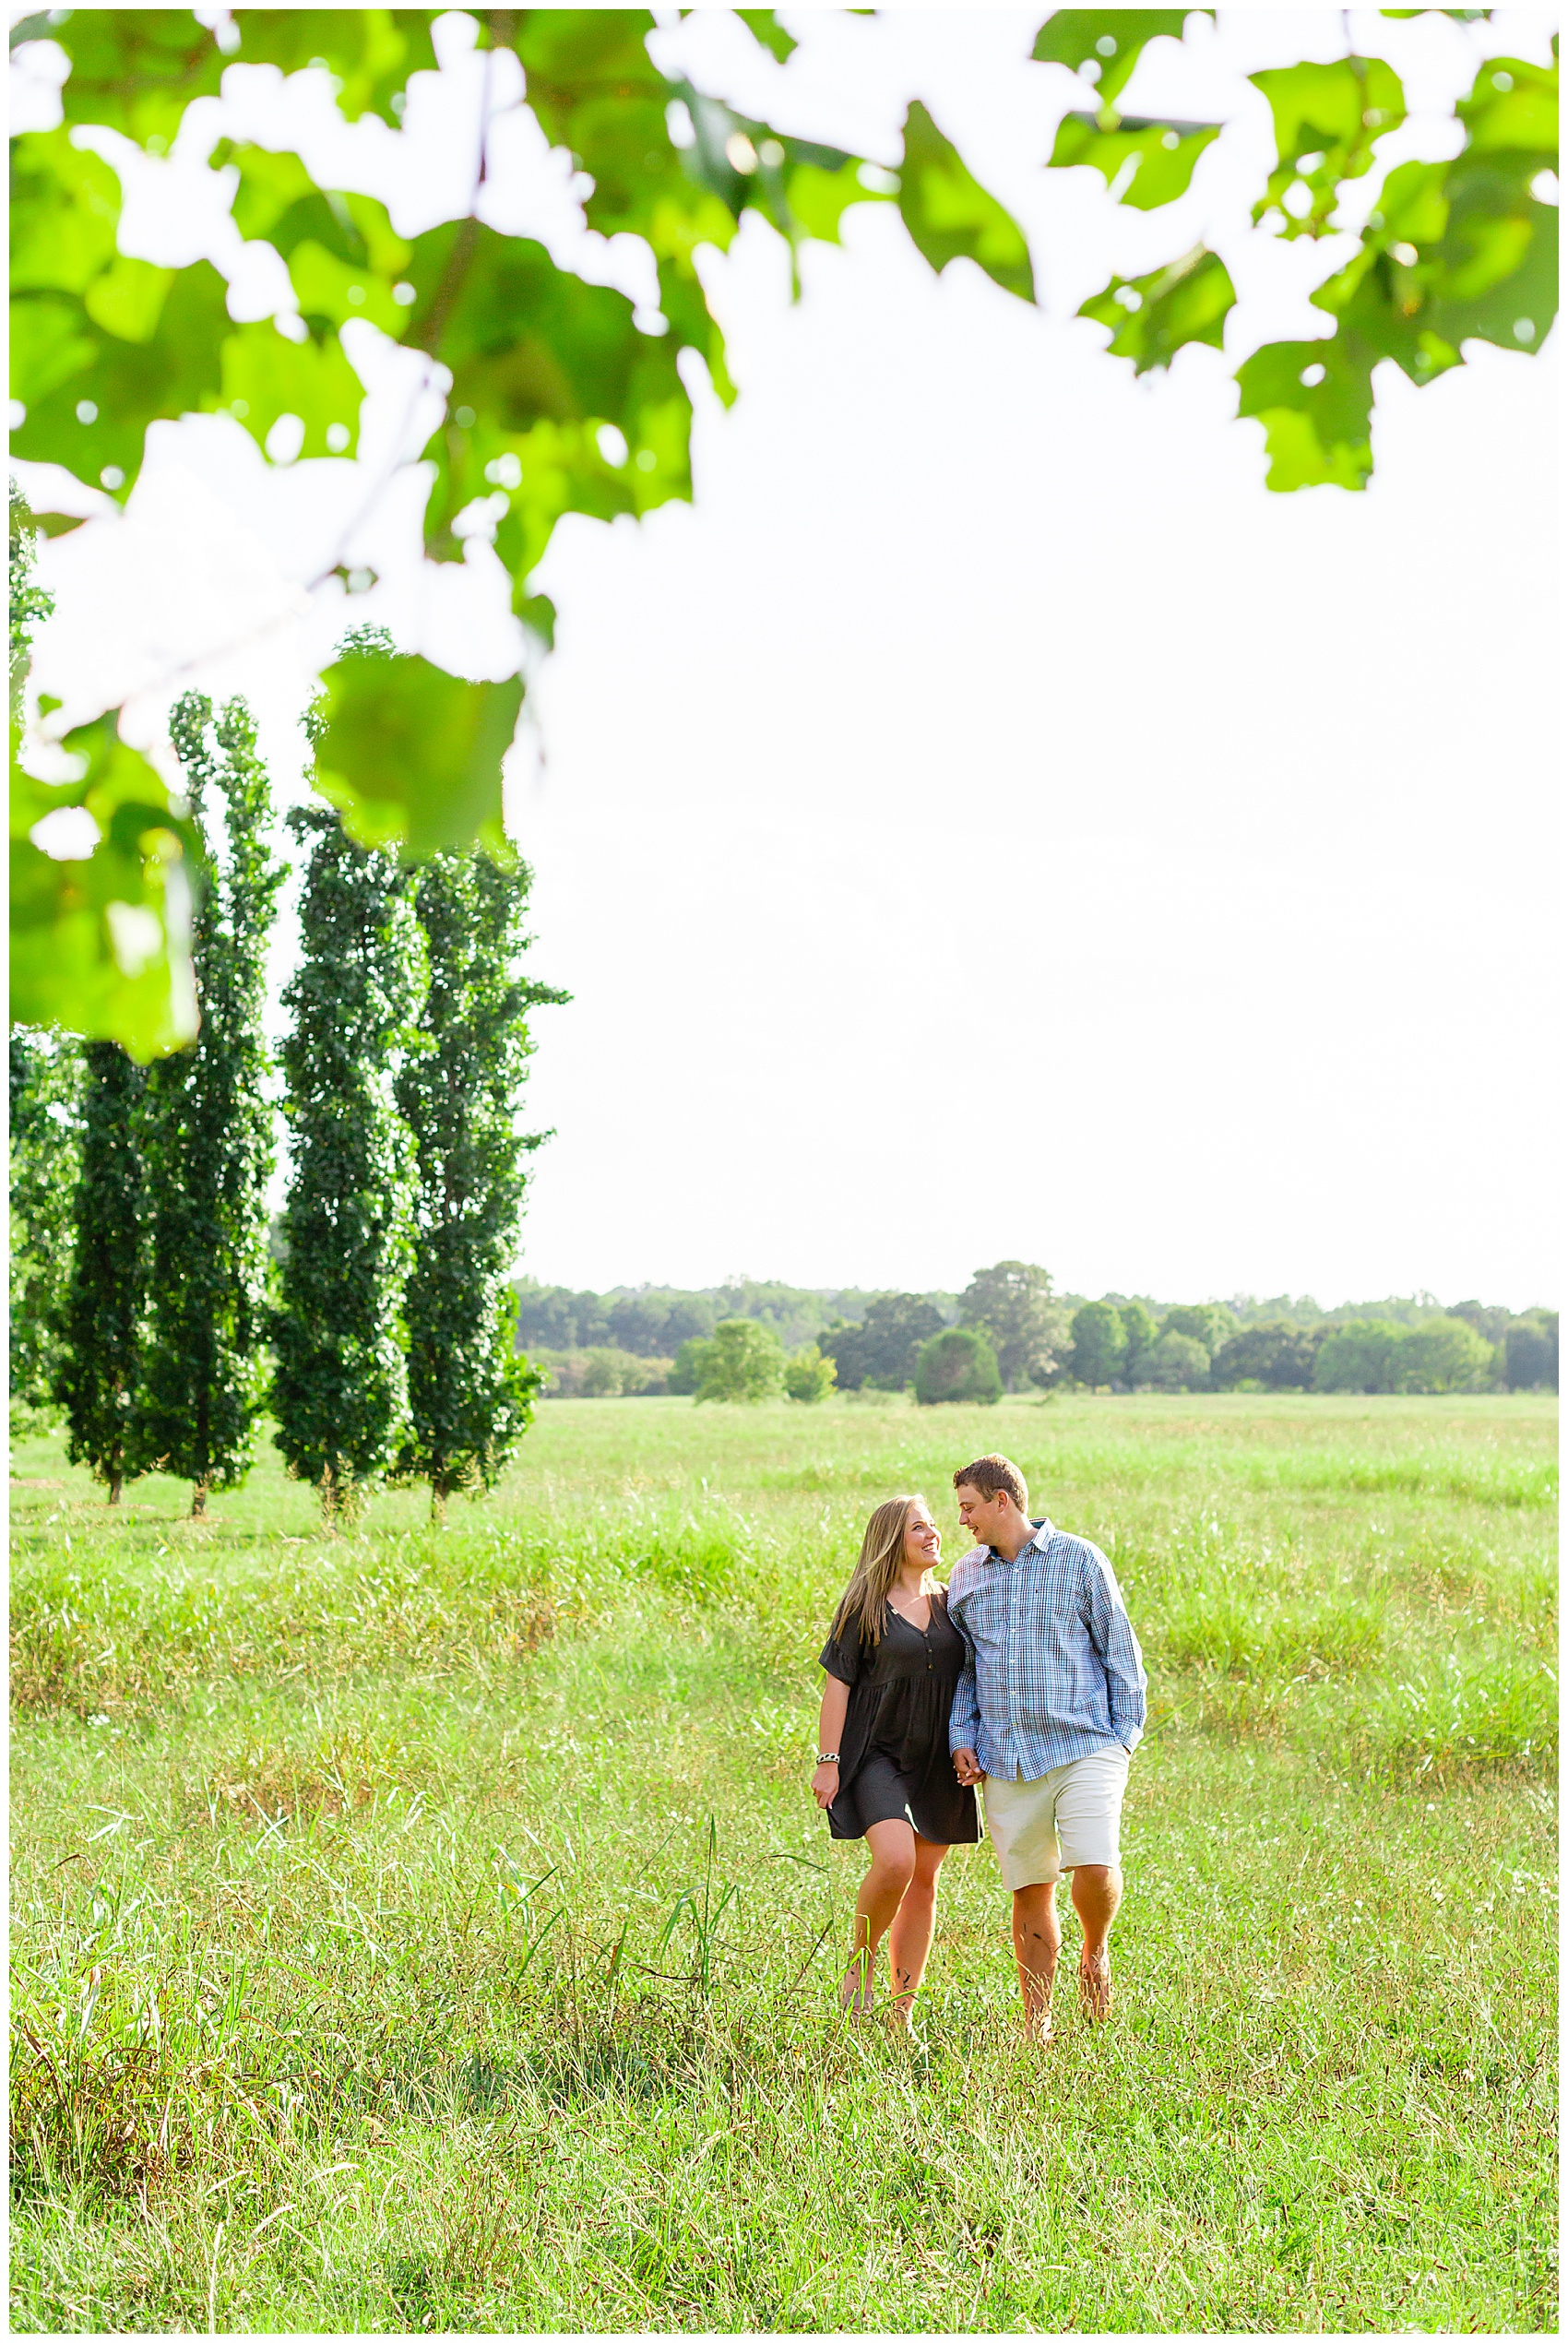 engaged couple walking in an open field